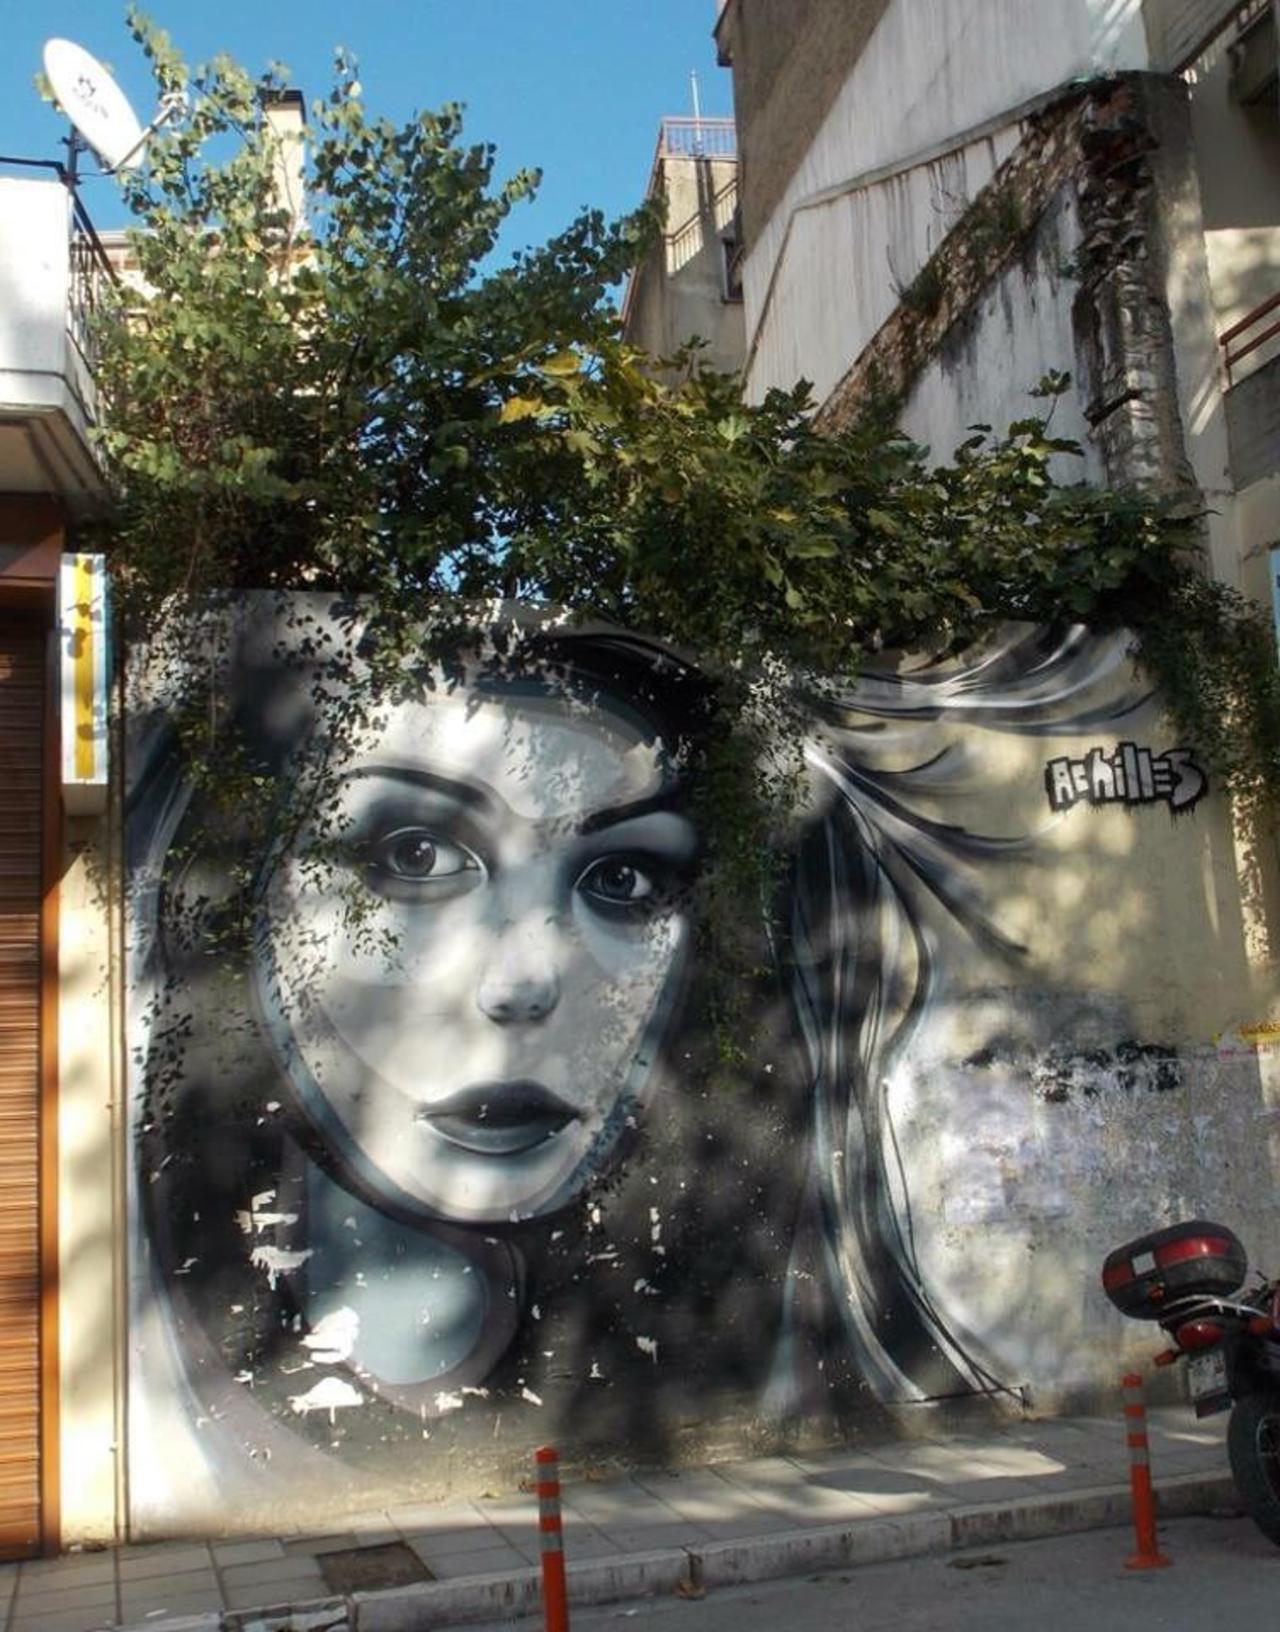 When Street Art meets nature by the artist Achilles 

#art #arte #graffiti #streetart http://t.co/64QKrJ4YOE